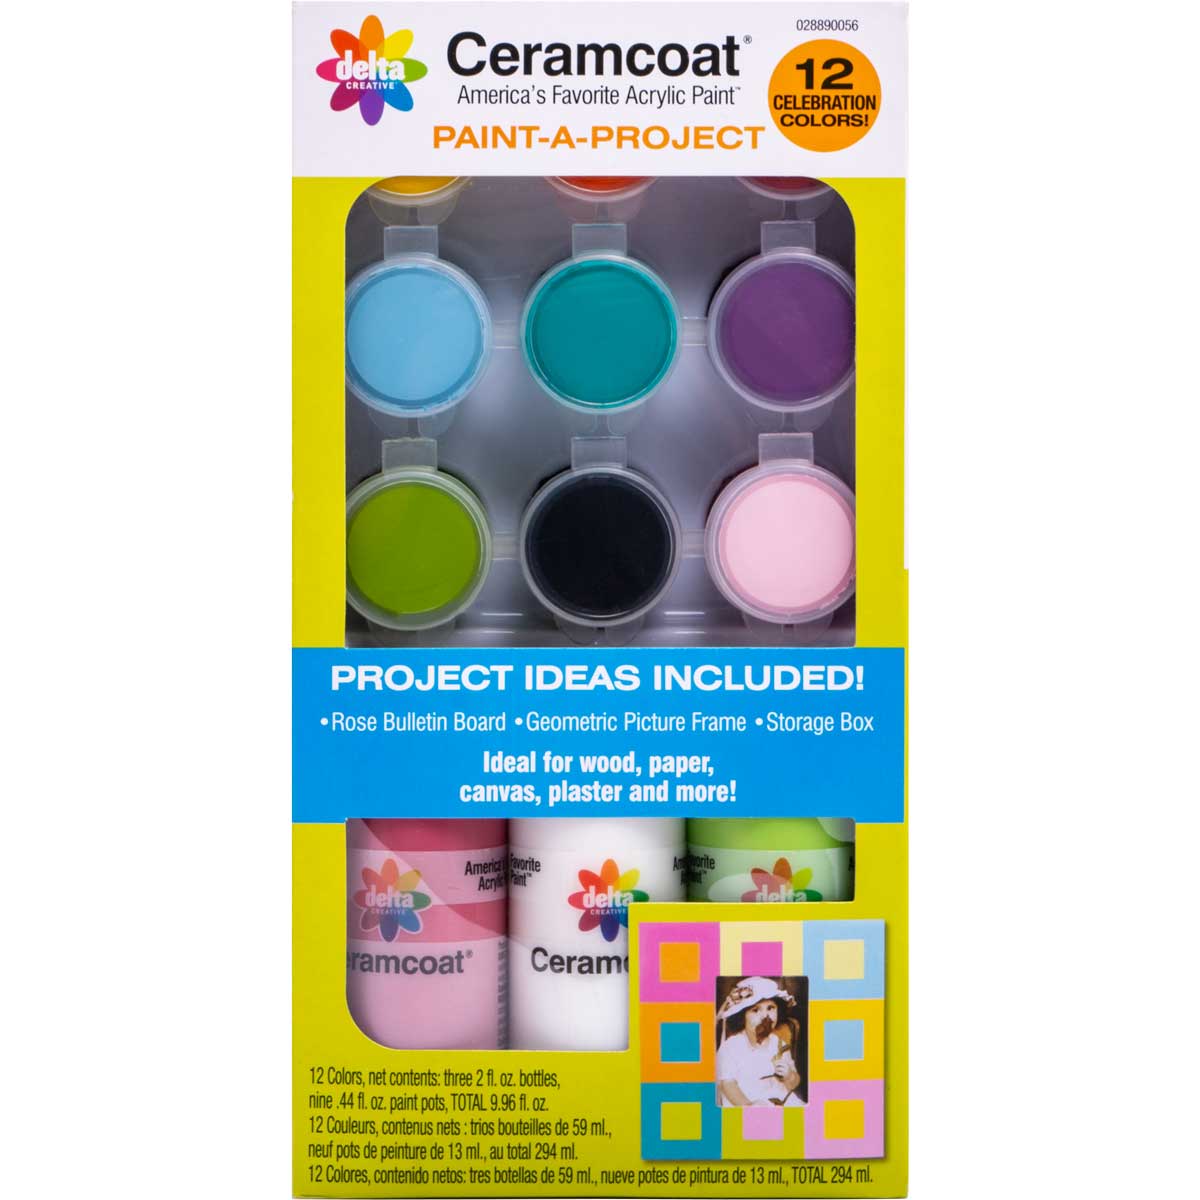 Delta Ceramcoat ® Paint-A-Project - Celebration, 12 Colors - 028890056